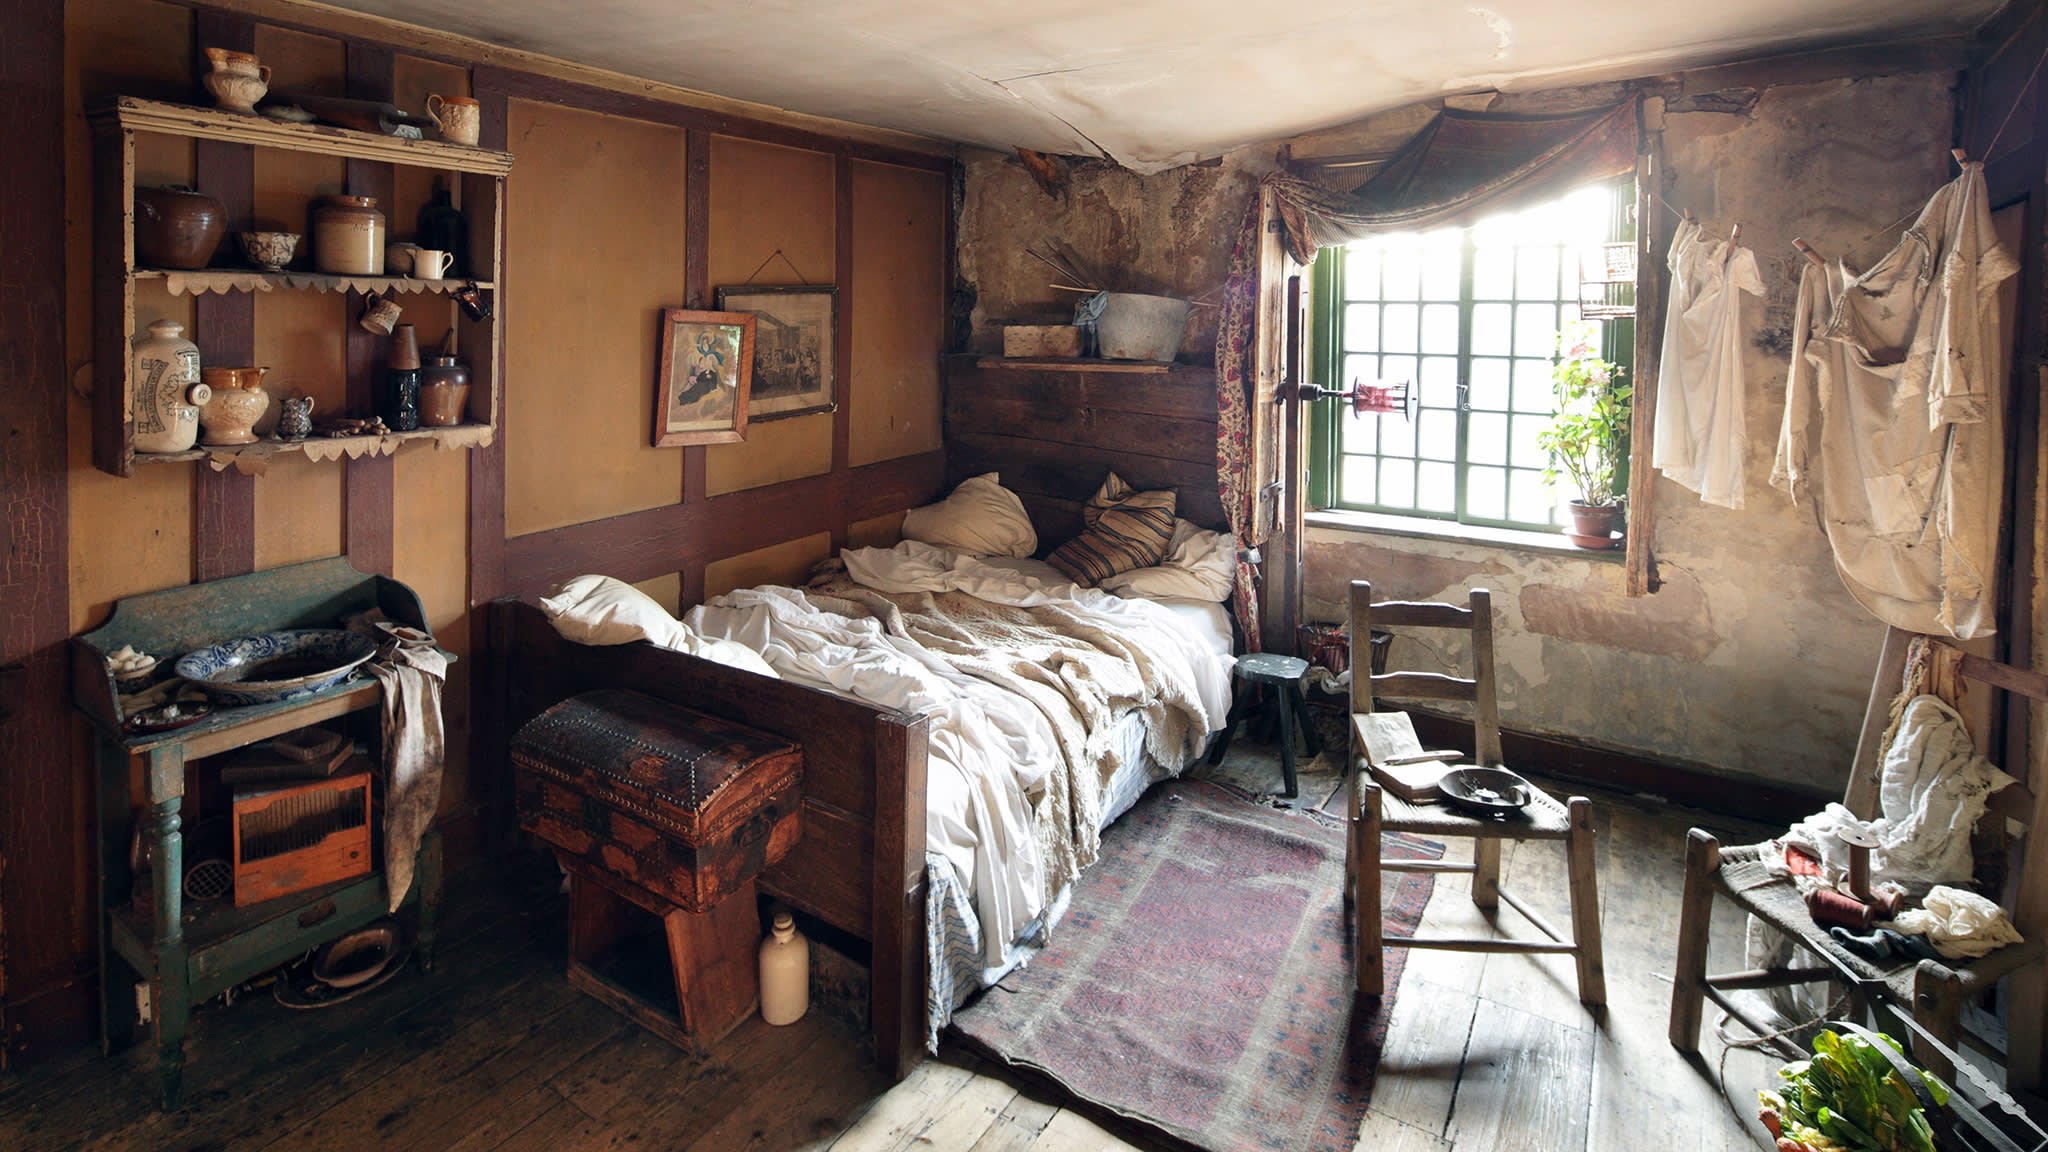 Как выглядят дома этих семей обстановка. Спальня в бедном жилище 19 века в Англии. Жилища бедняков Лондон 19в. Бедный дом внутри. Бедная комната.